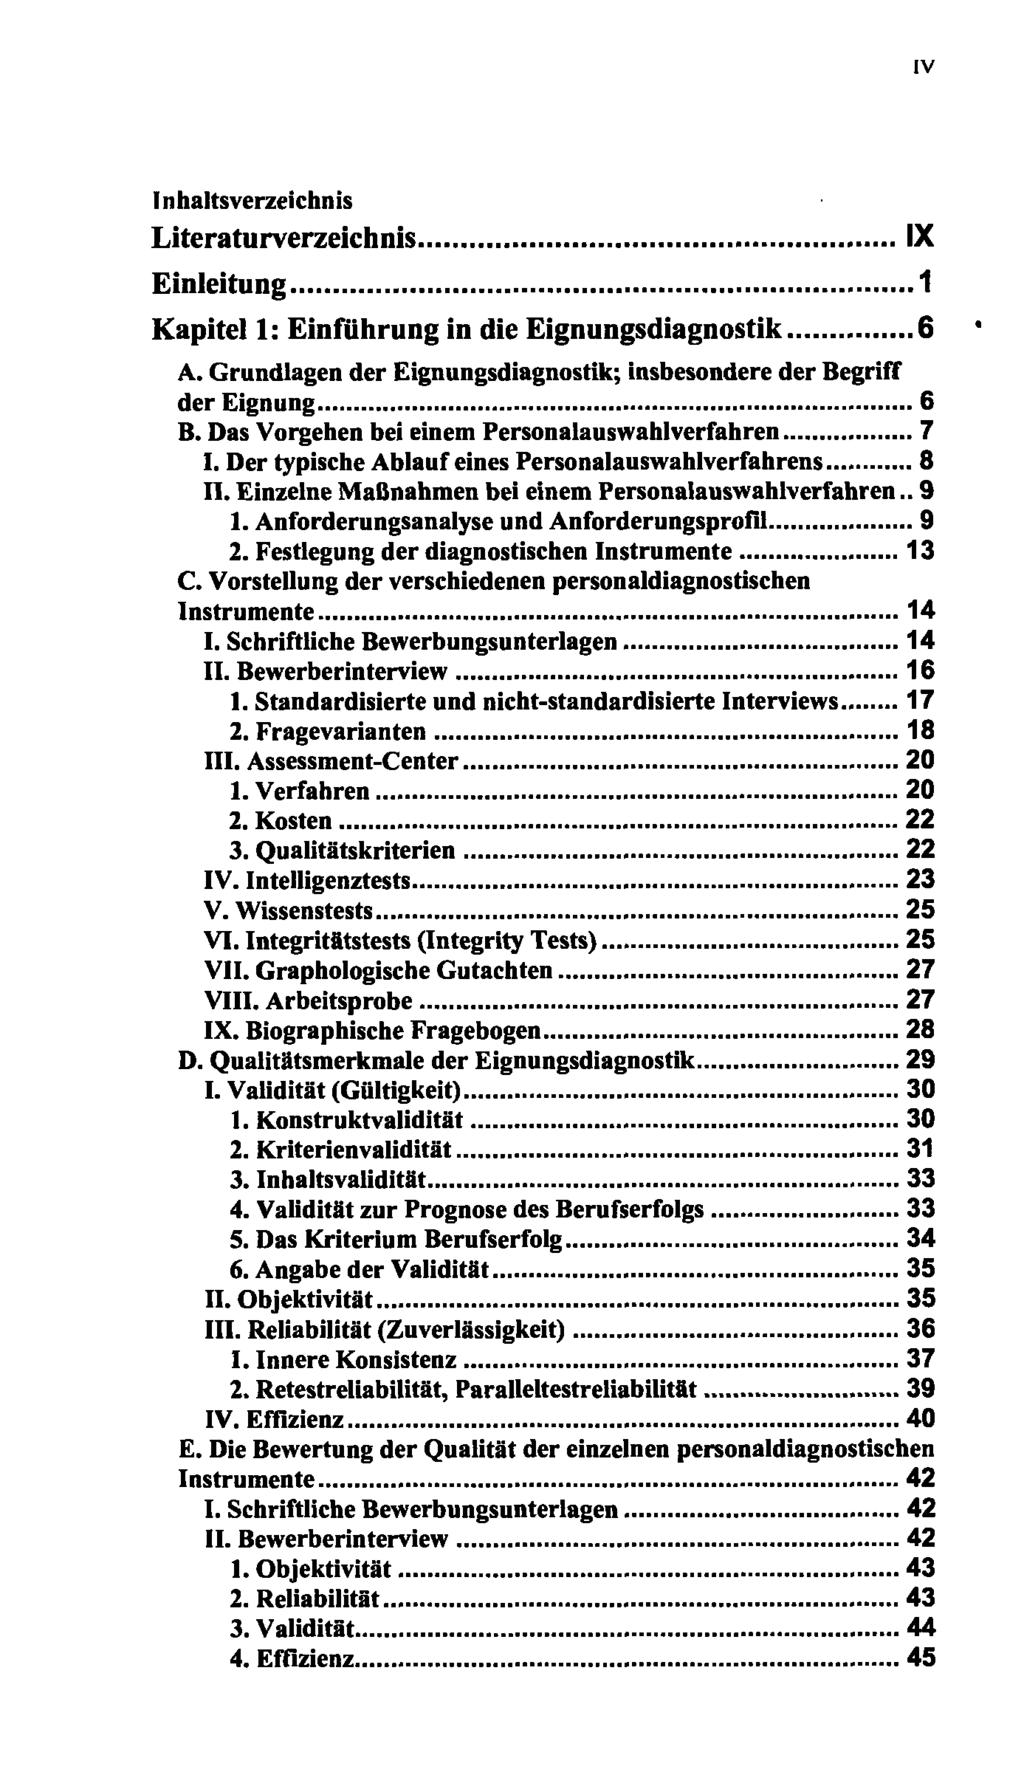 IV Inhaltsverzeichnis Literaturverzeichnis Einleitung 1 Kapitel 1: Einführung in die Eignungsdiagnostik 6 A. Grundlagen der Eignungsdiagnostik; insbesondere der Begriff der Eignung 6 B.